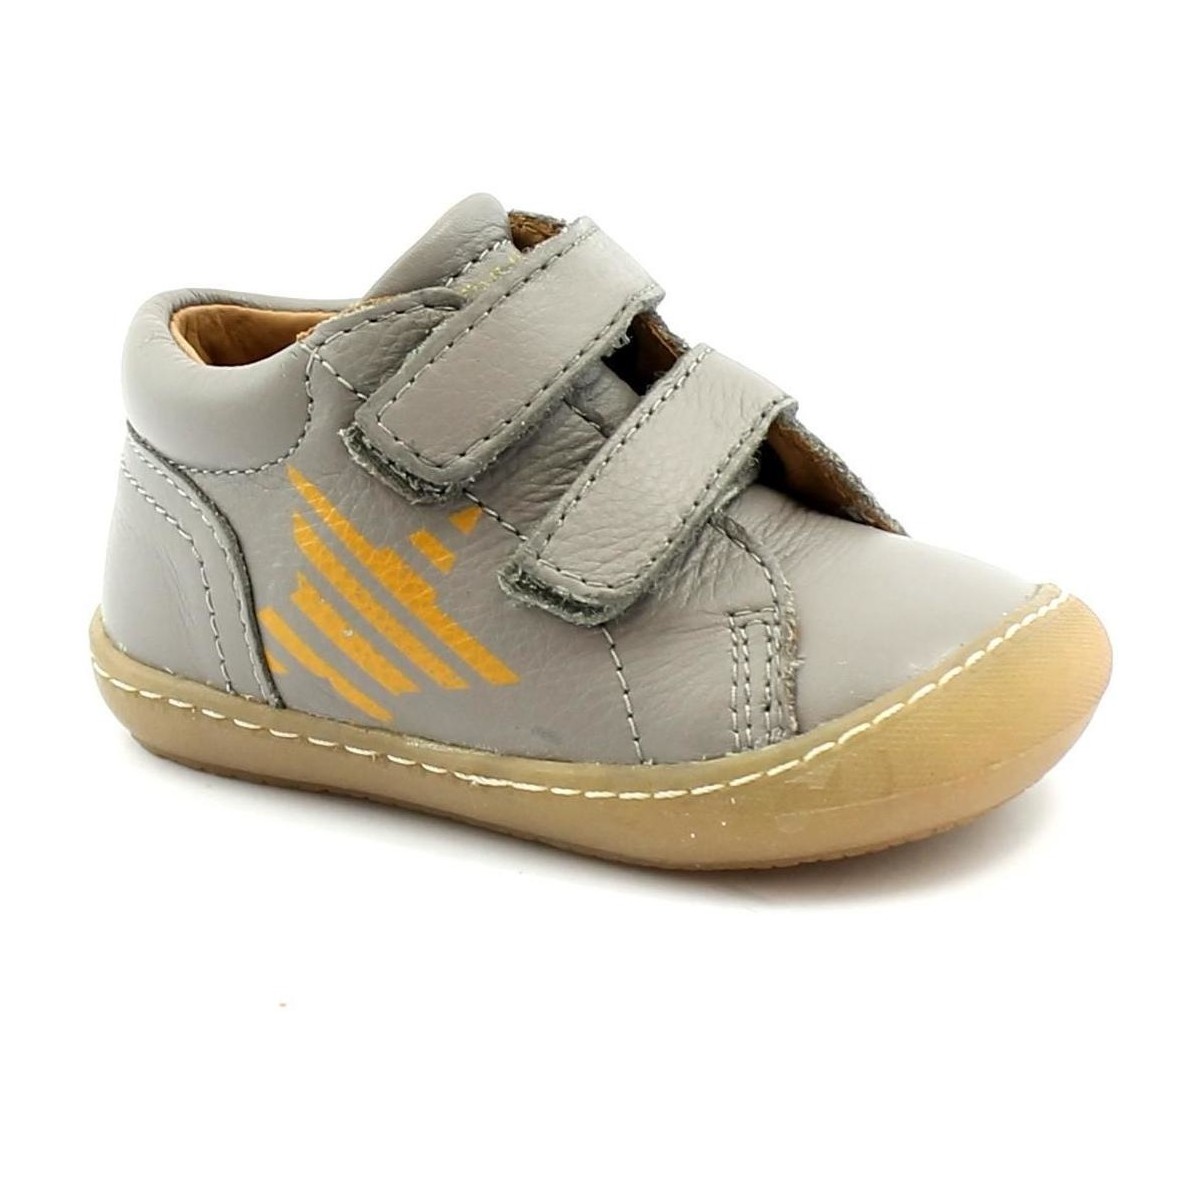 Chaussures Enfant Baskets basses Grunland GRU-I21-PP0085-GR Gris